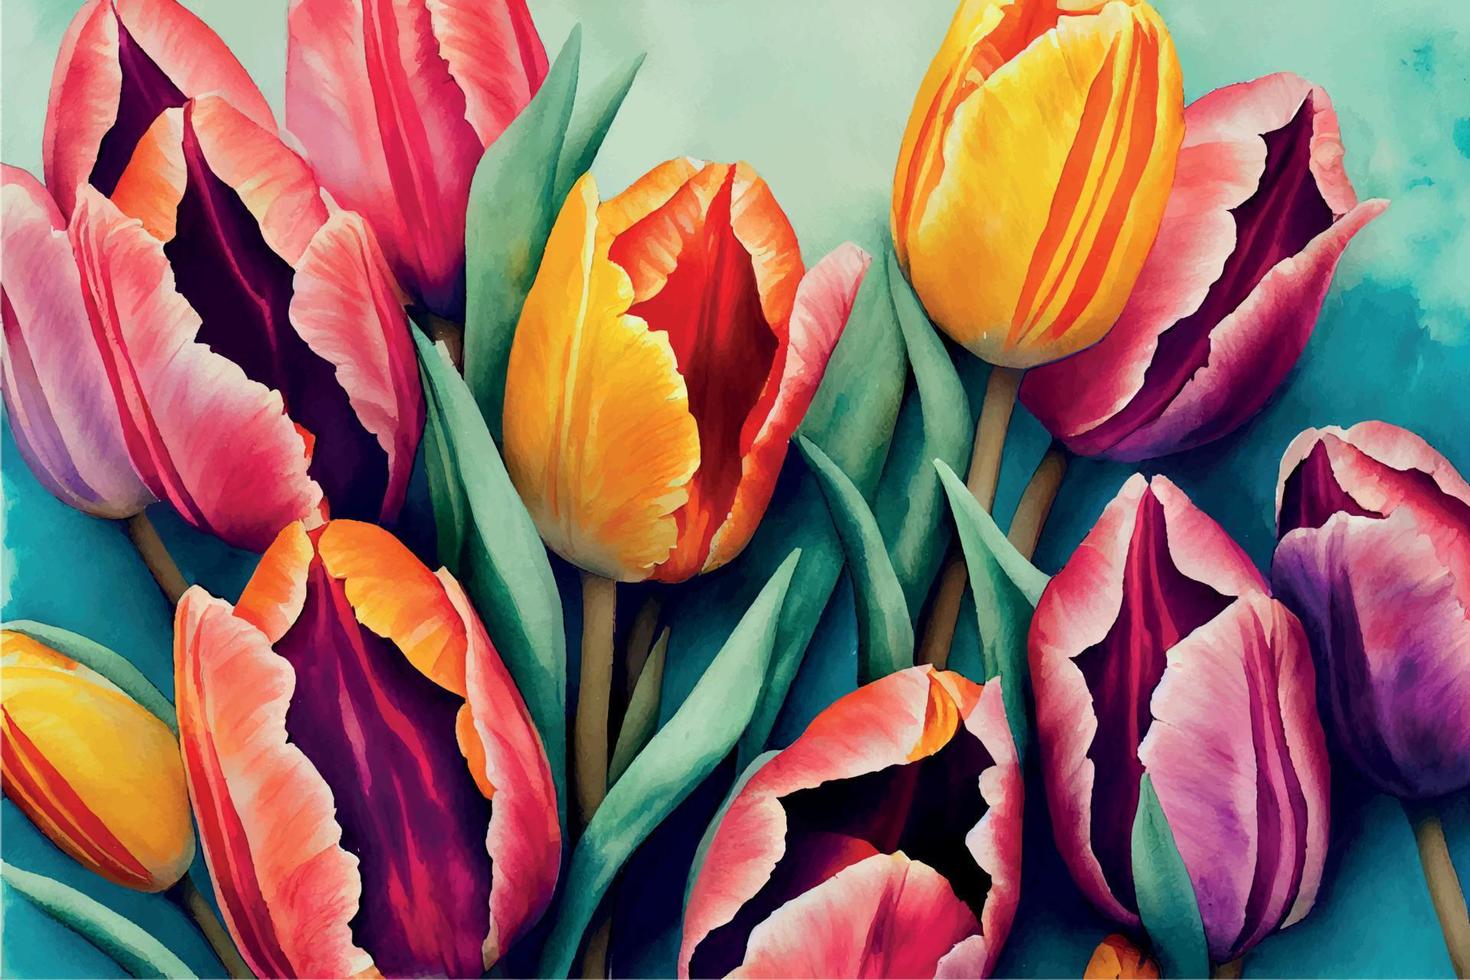 fundo de tulipas em aquarela vetor